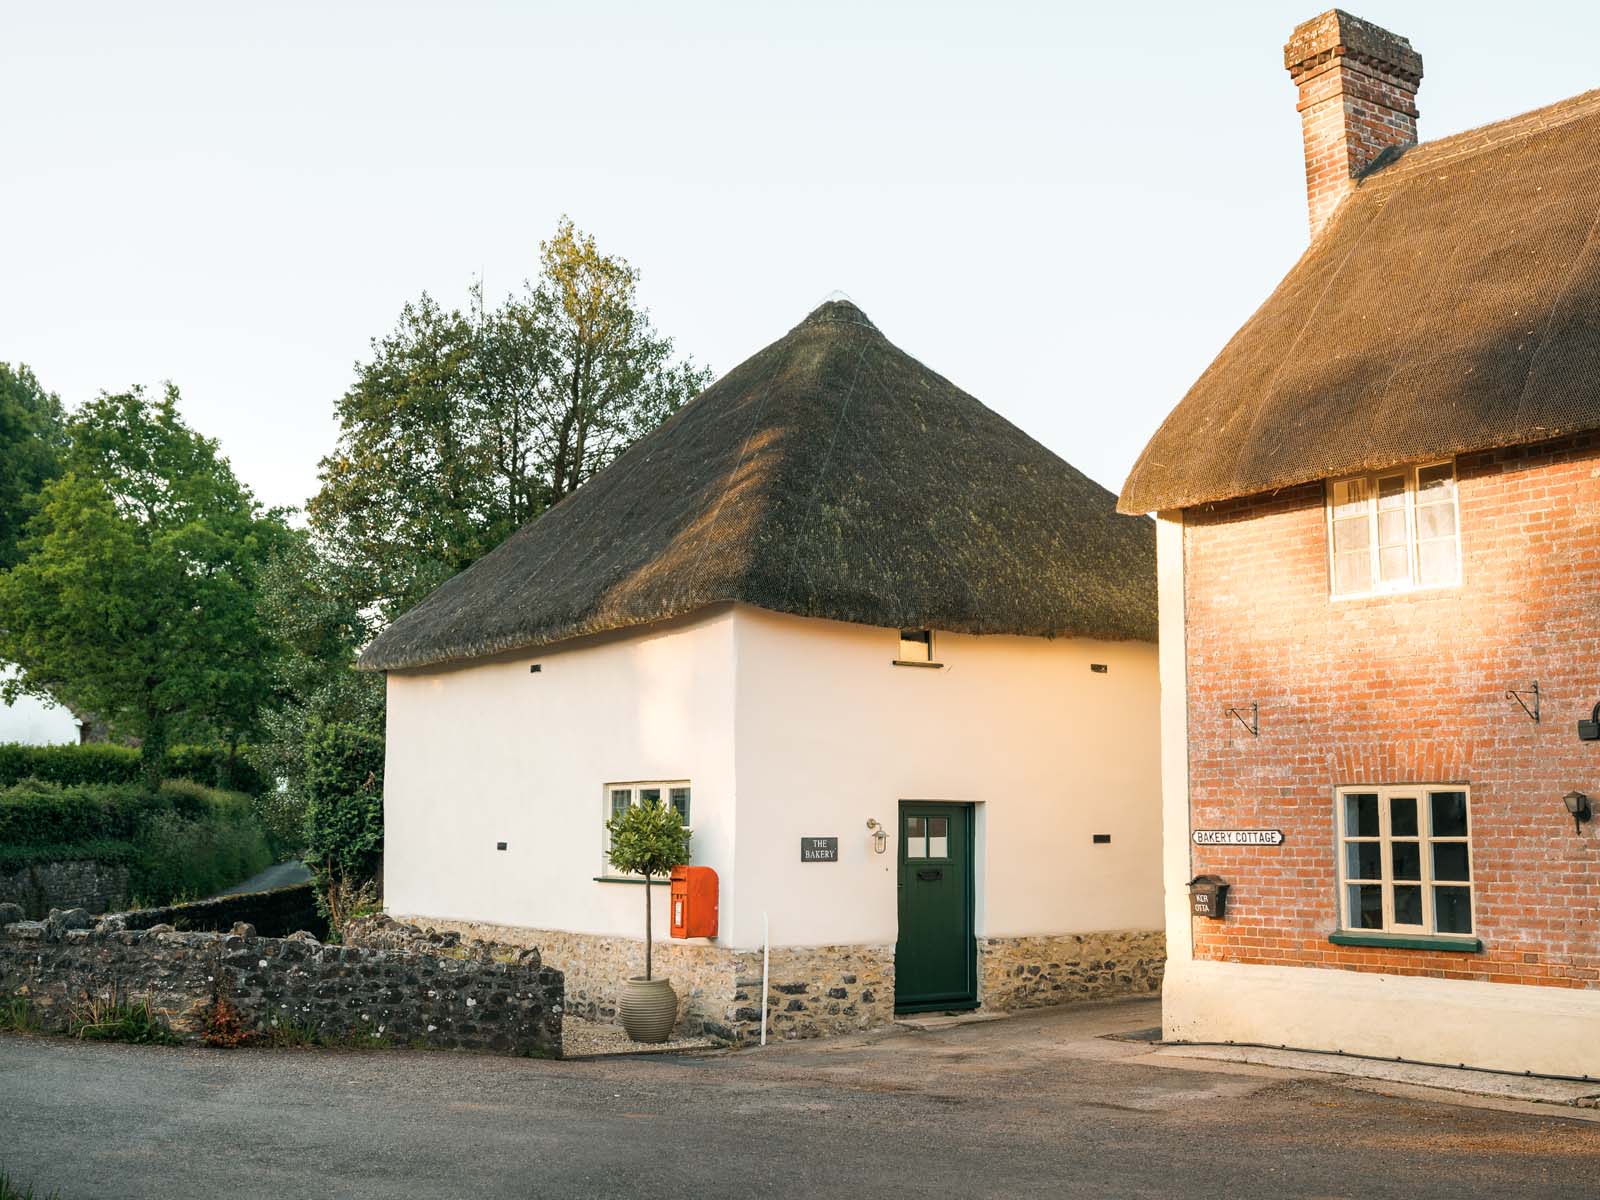 The Bakery Devon cottage